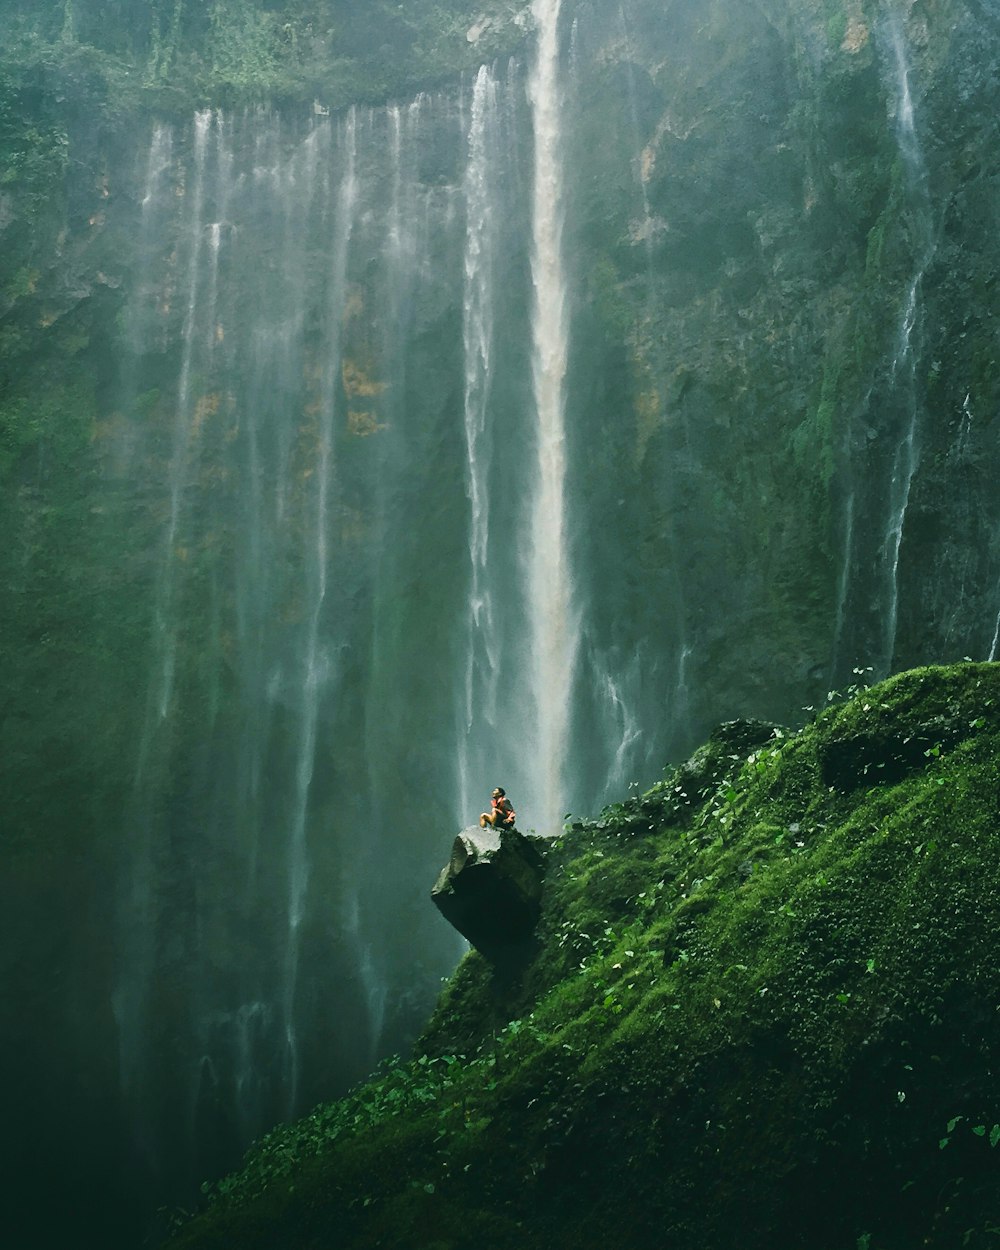 Photographie aérienne d’une personne assise sur des rochers près de chutes d’eau